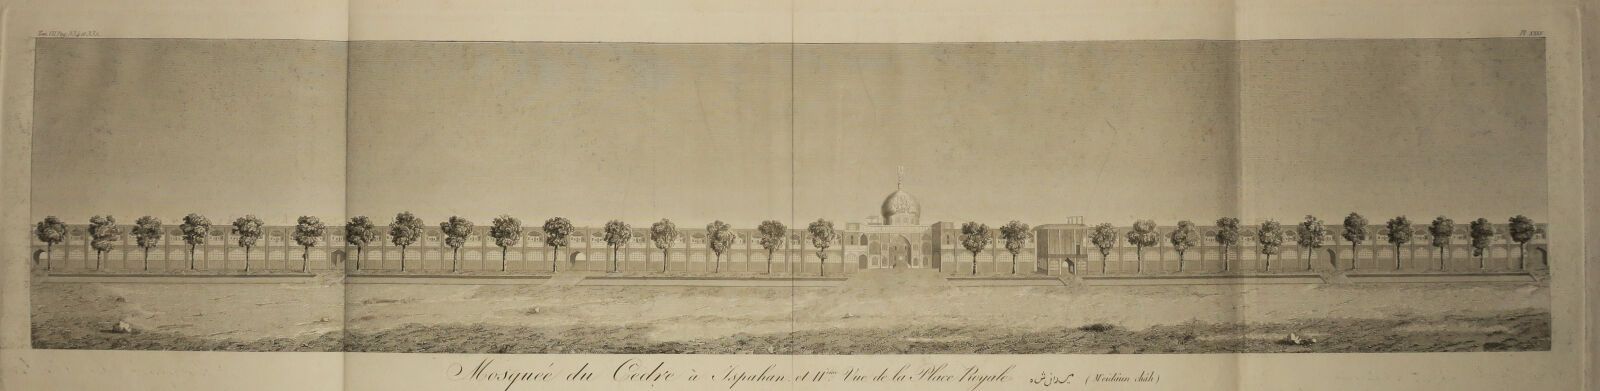 Null 伊朗 - 罕见的 "ISPAHAN的雪松清真寺和皇家广场（Meïdâun Châh）第11景 "的全景图。大型蚀刻画和錾刻画。铺板纸上的证明。边缘。折&hellip;